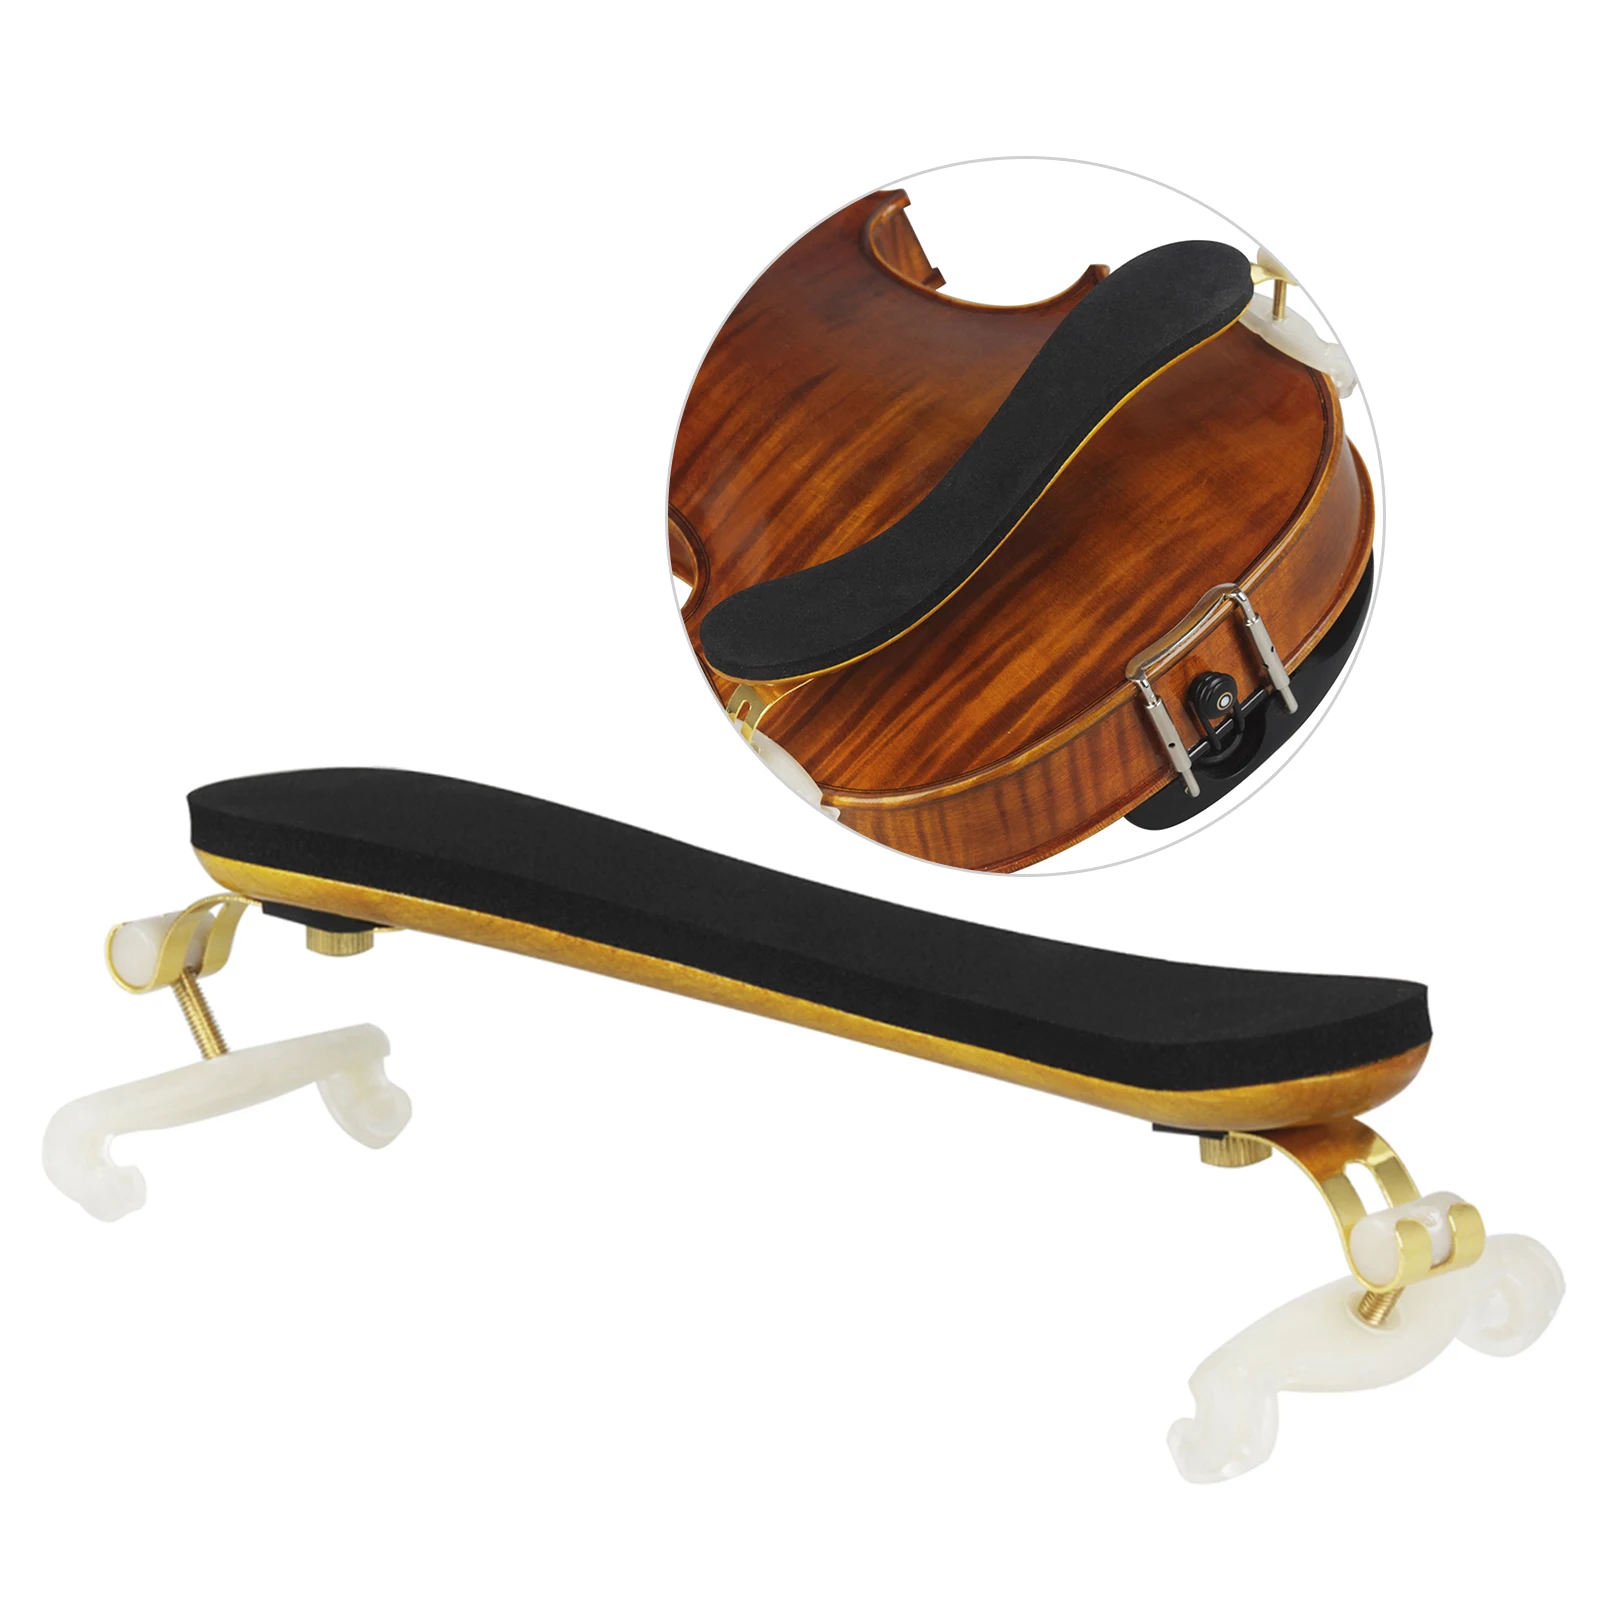 

Astonvilla AS-560 Solid Wood Fiddle Violin Shoulder Rest for 3/4 & 4/4 Violins